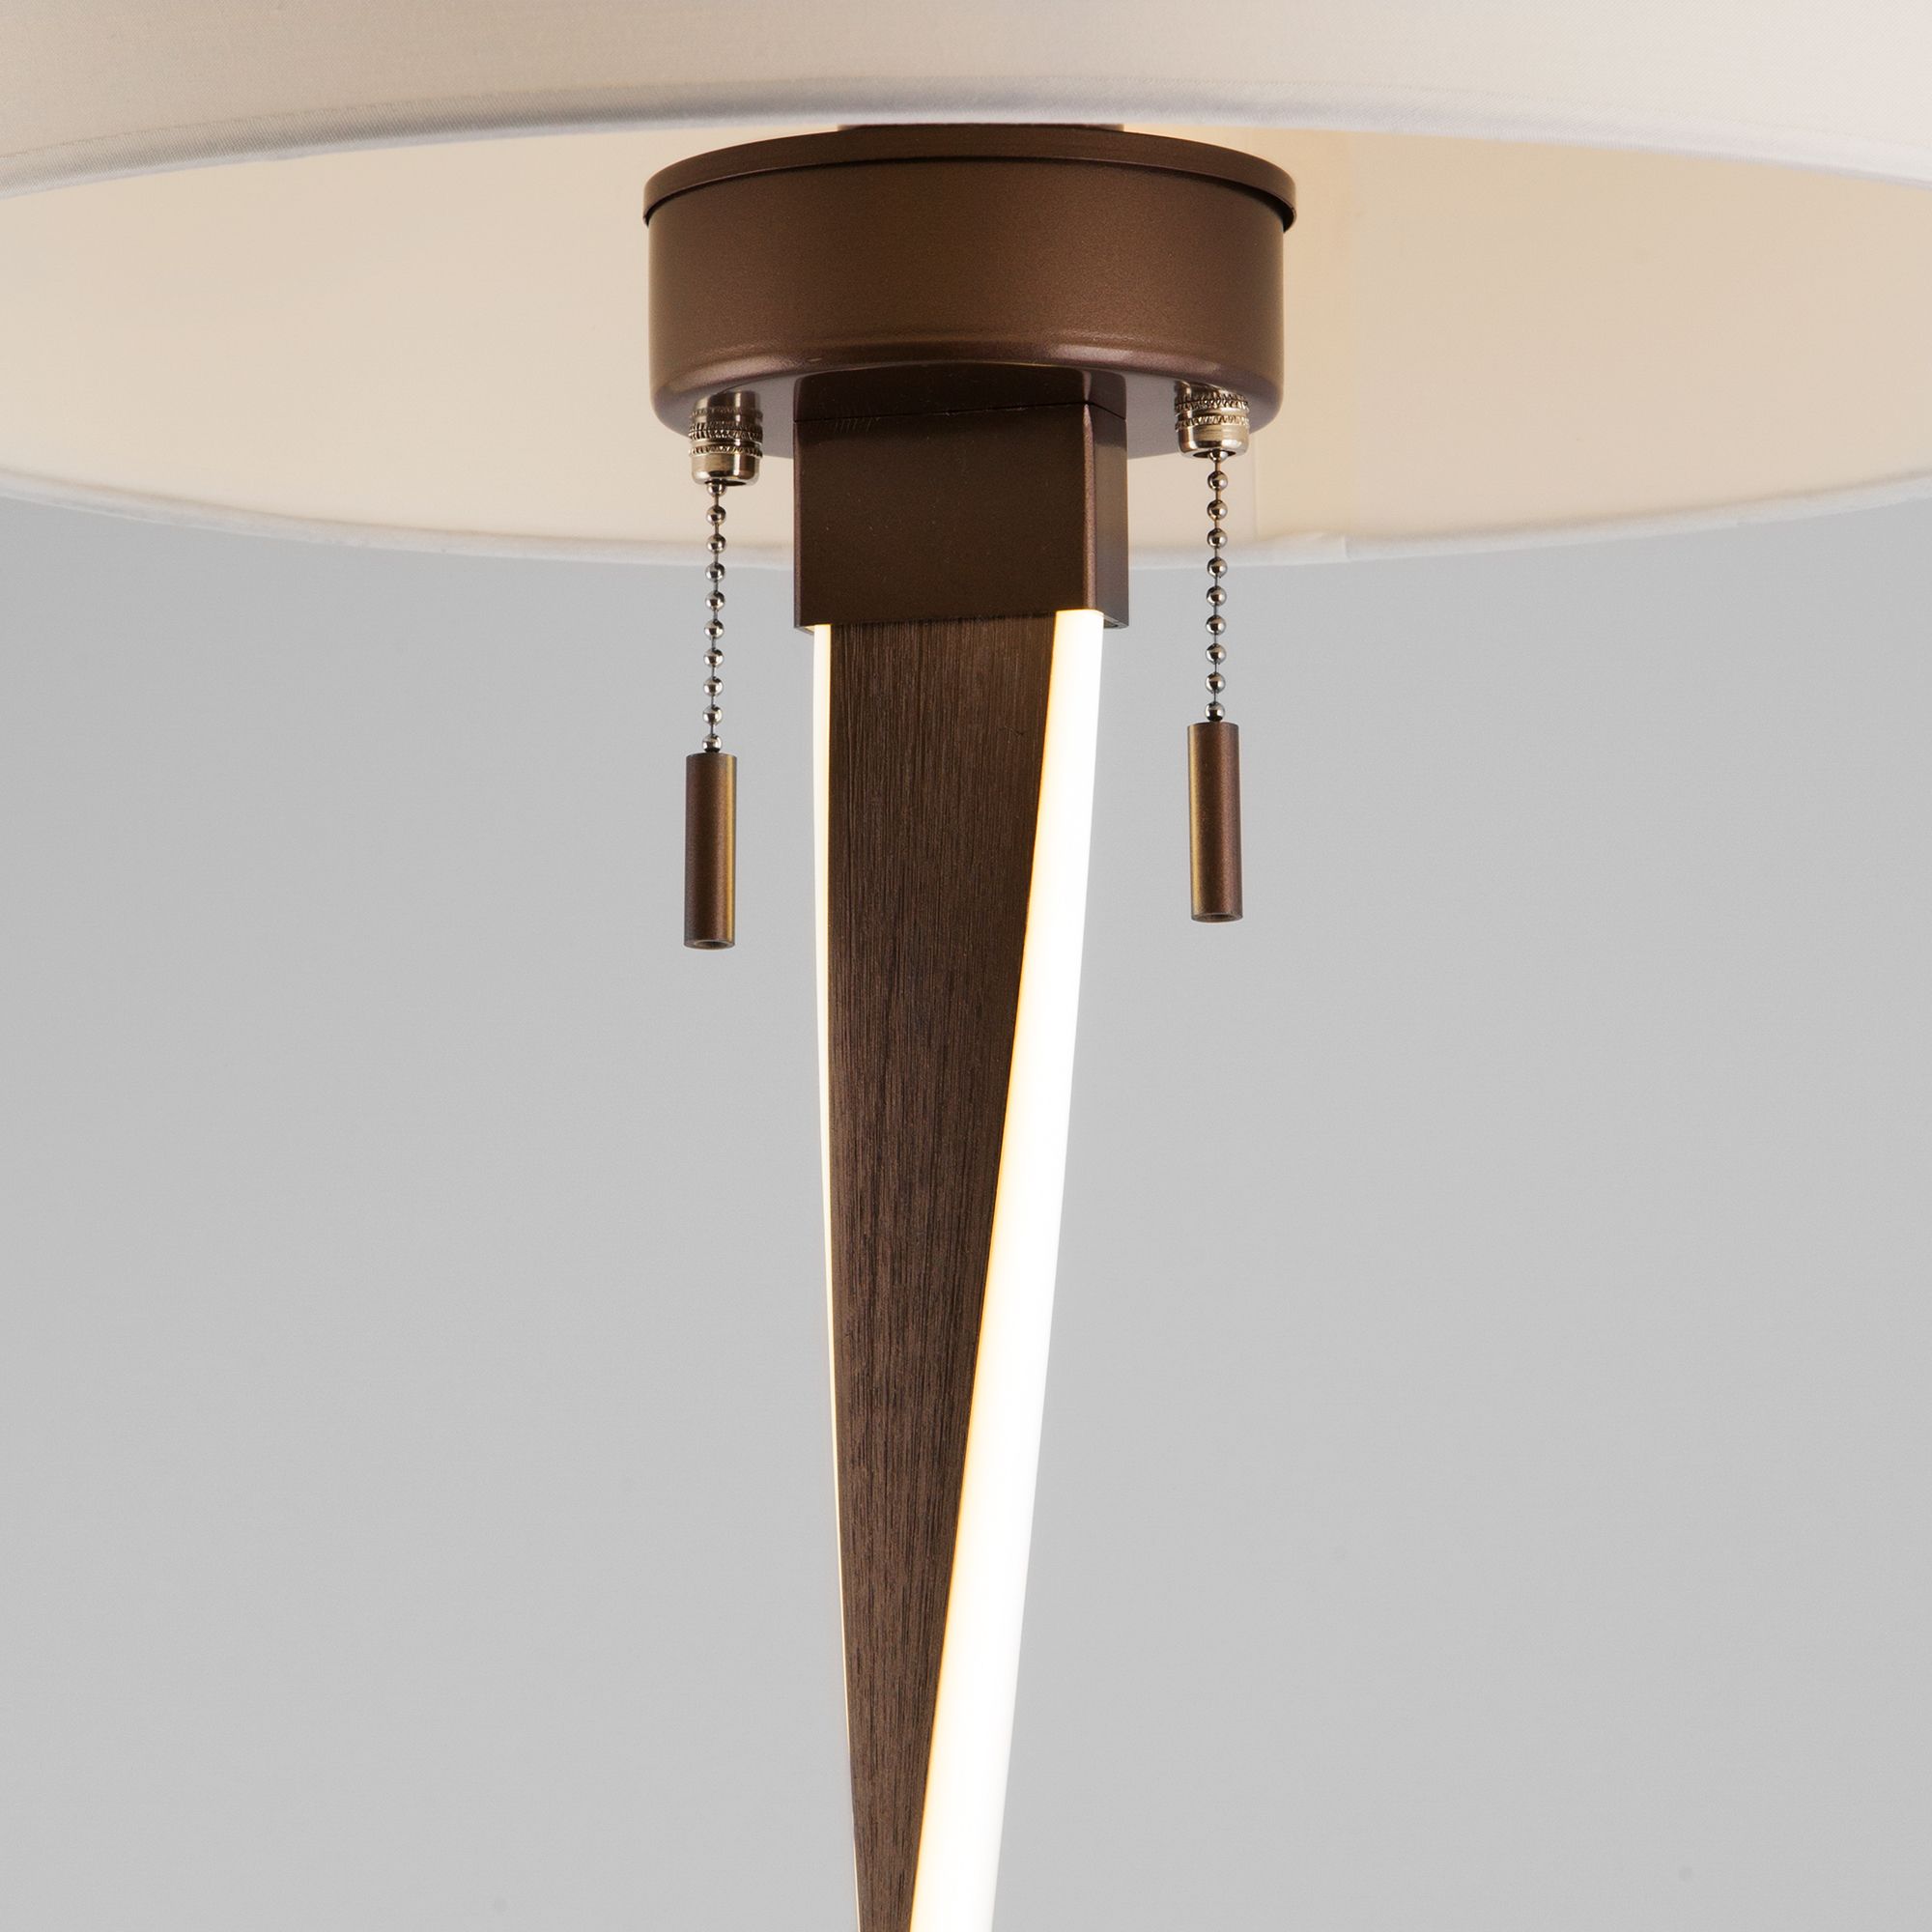 Напольный светодиодный светильник с тканевым абажуром Bogate's Titan 990 белый / коричневый. Фото 2